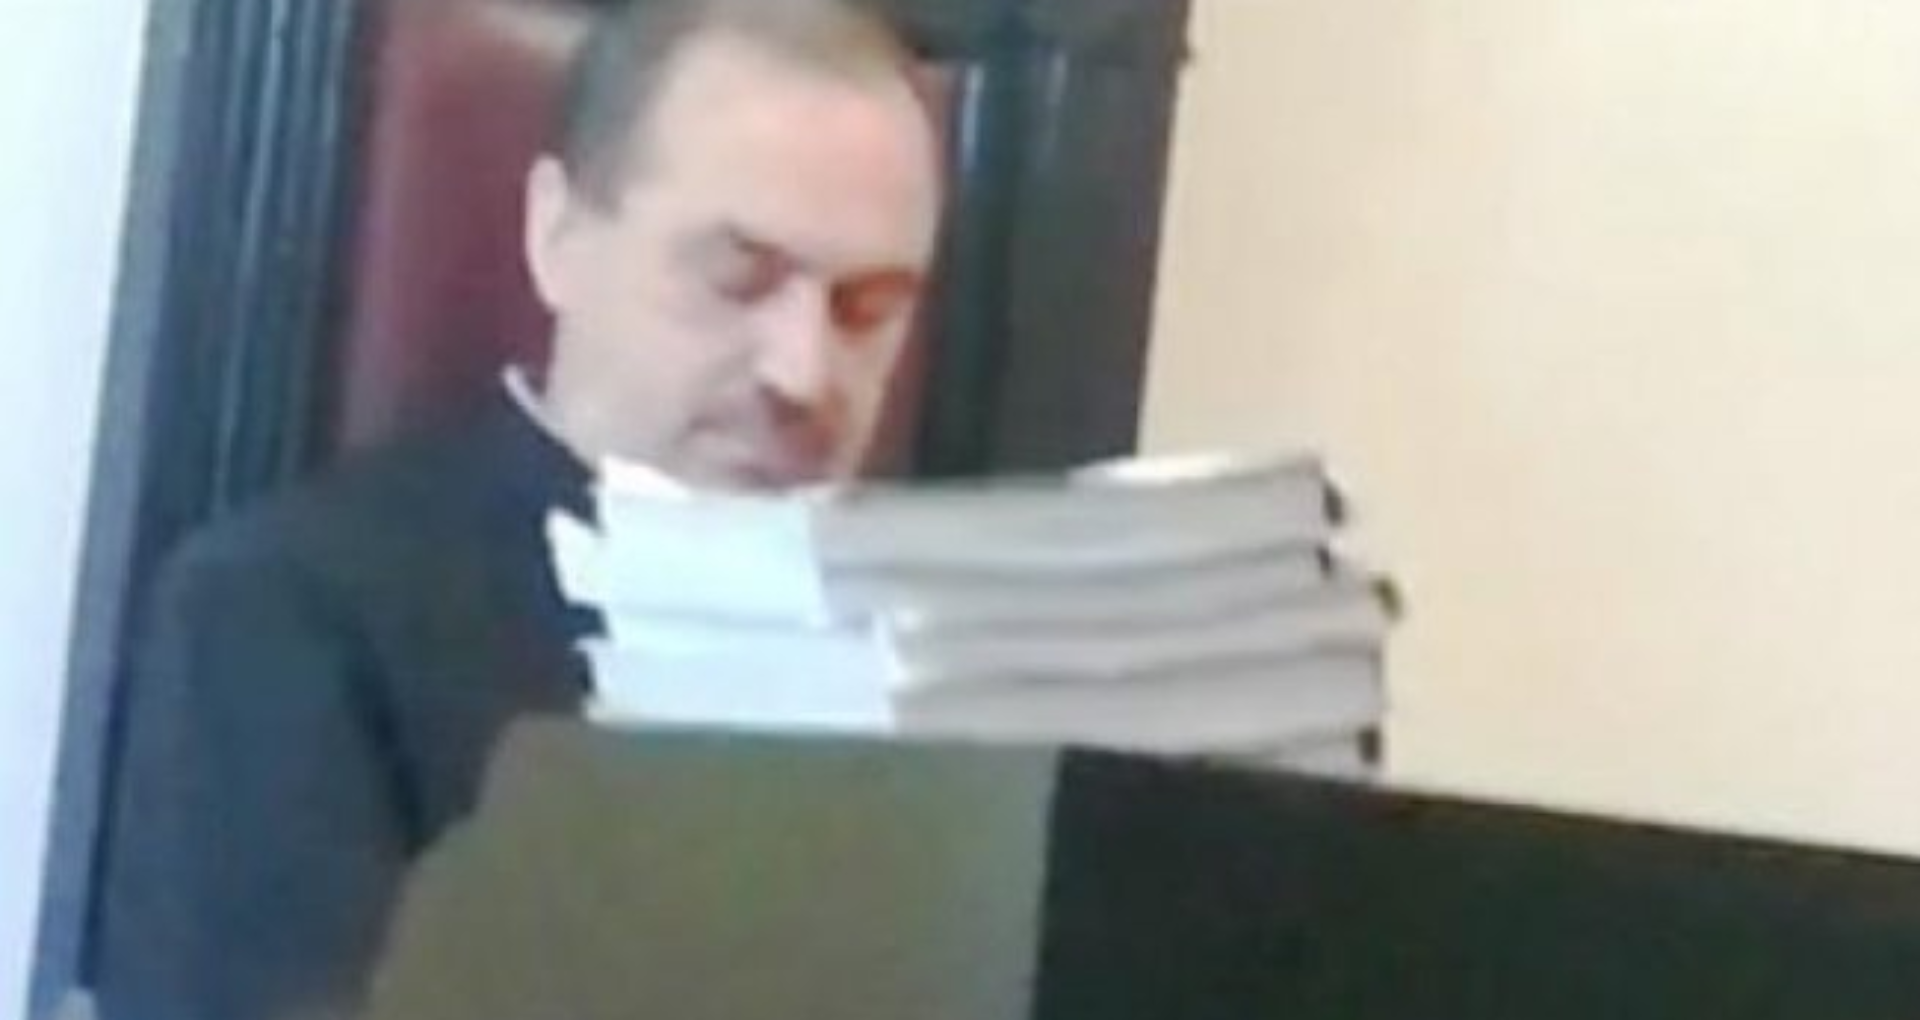 DOC/ Magistratul judecat penal după un articol din ZdG a fost achitat